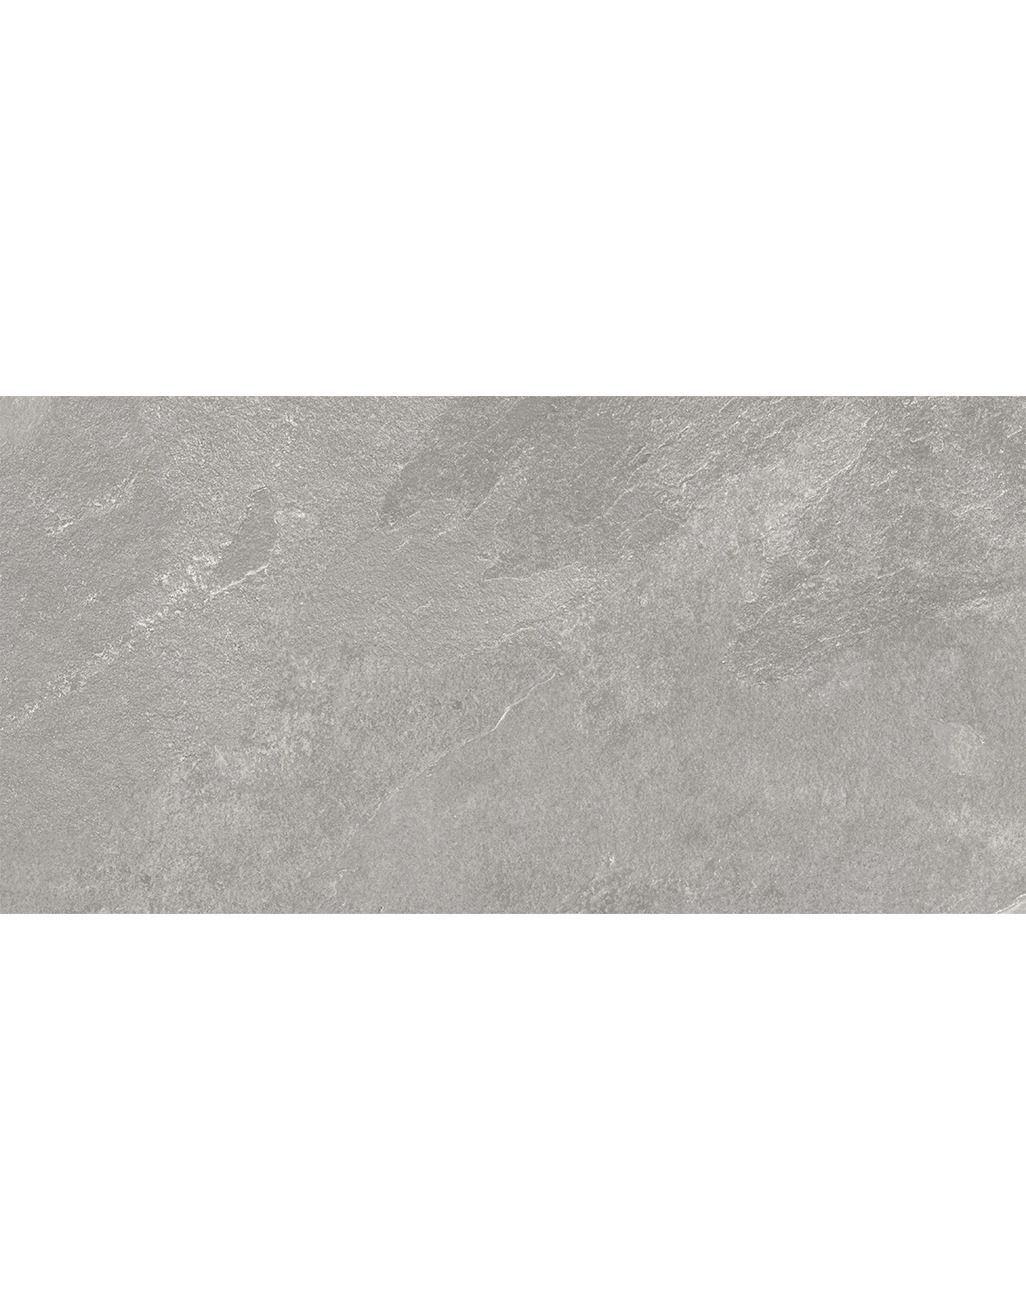 Bologna - Antique Limestone - 30cm x 60cm 3